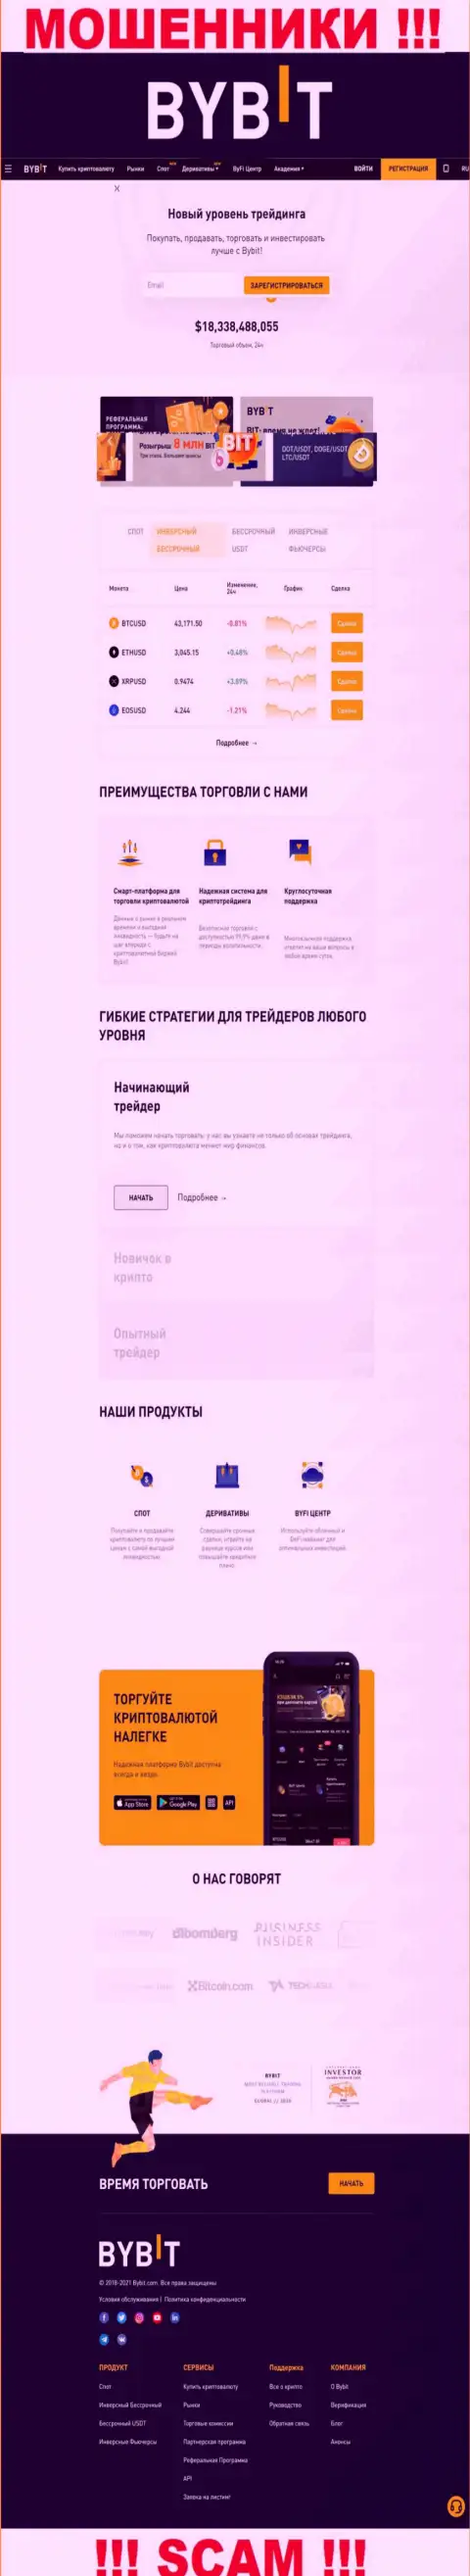 Основная страничка официального веб-сервиса махинаторов ByBit Com